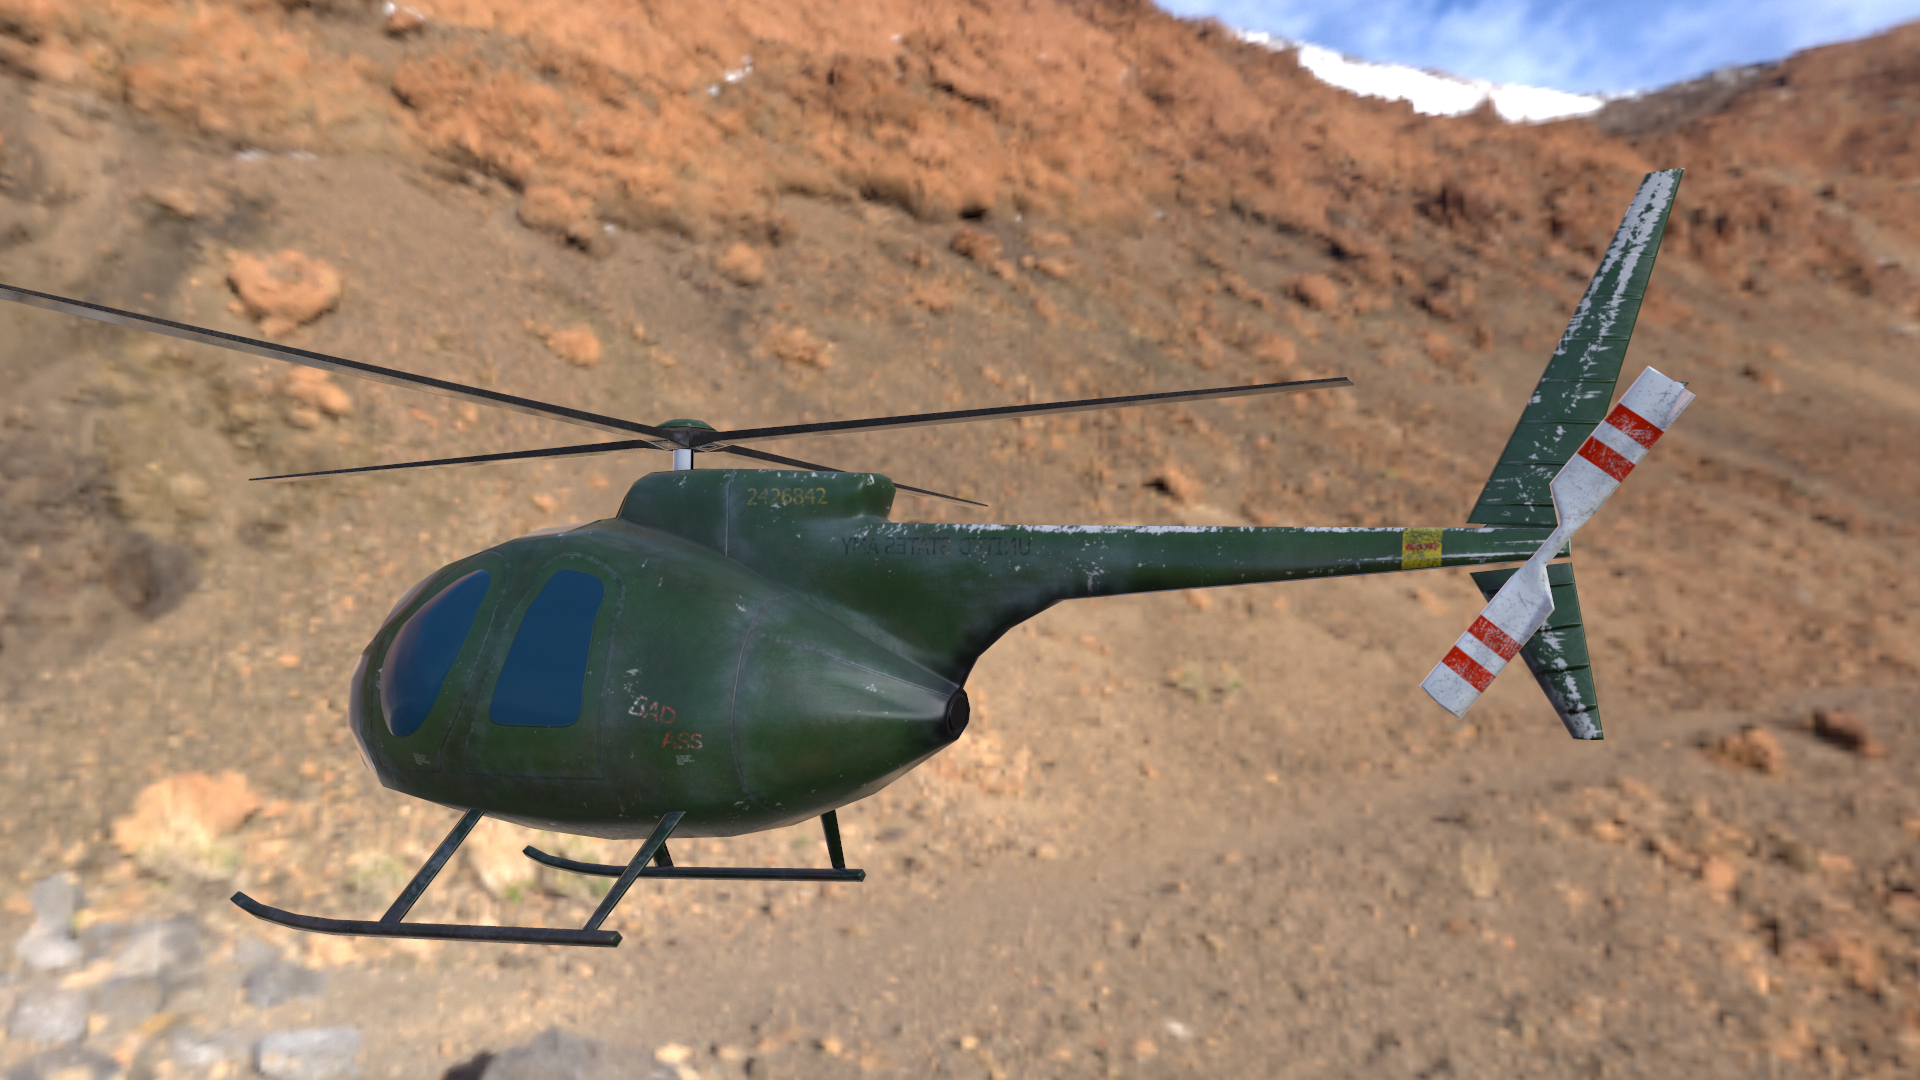 imagen de helicóptero lowpoly modelo Hughes OH-6 Cayuse para aplicaciones móviles en 3d max Other